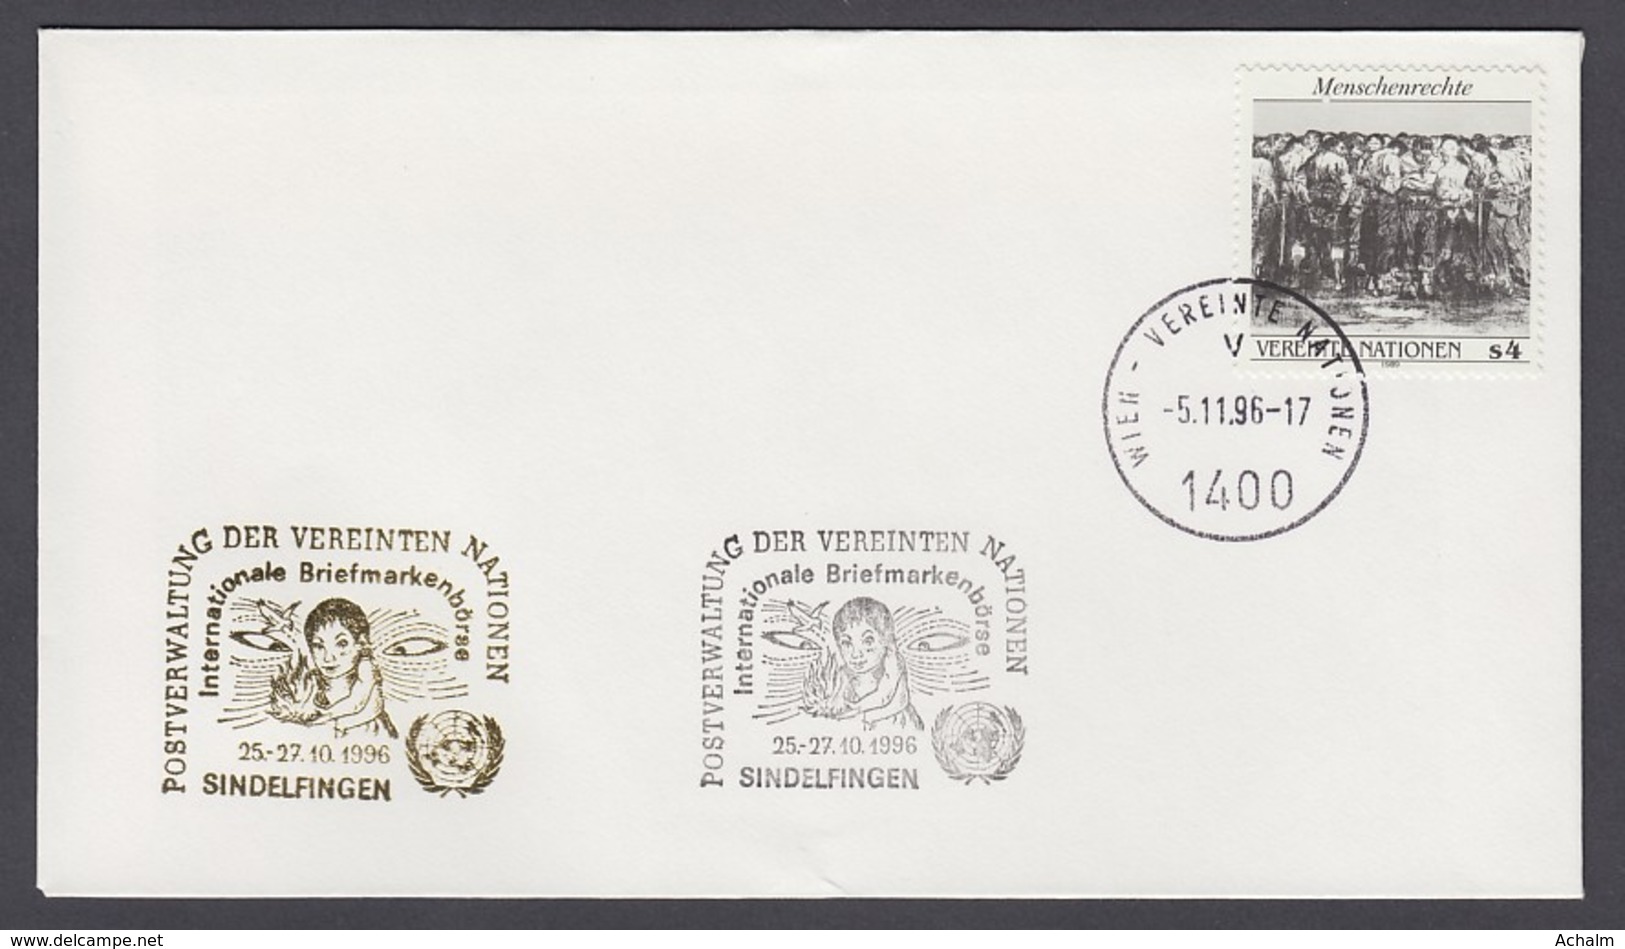 UNO Wien-UN Vienna - Beleg 1996 - MiNr. 96 - Gold-Sonderstempel - Int. Briefmarkenbörse, Sindelfingen - UNO